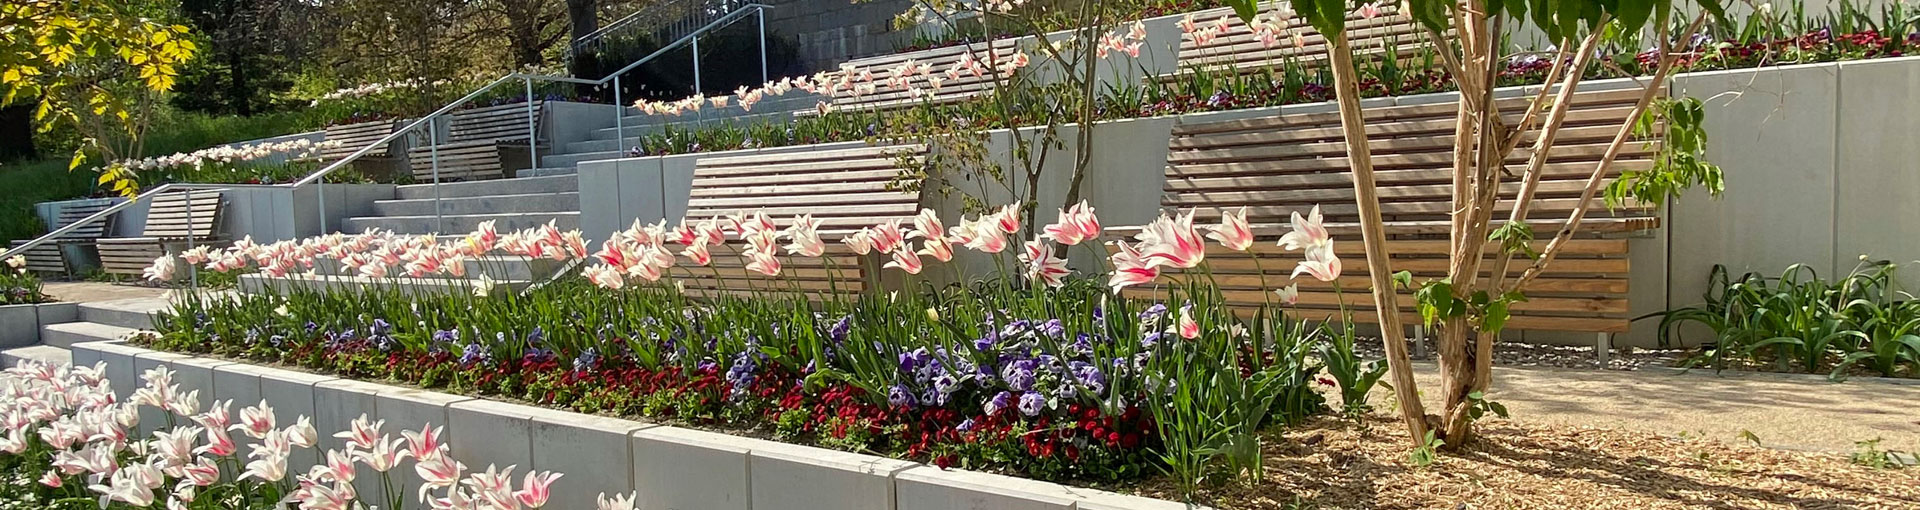 Des massifs de tulipes en fleurs (roses) au cimetière de Beauregard